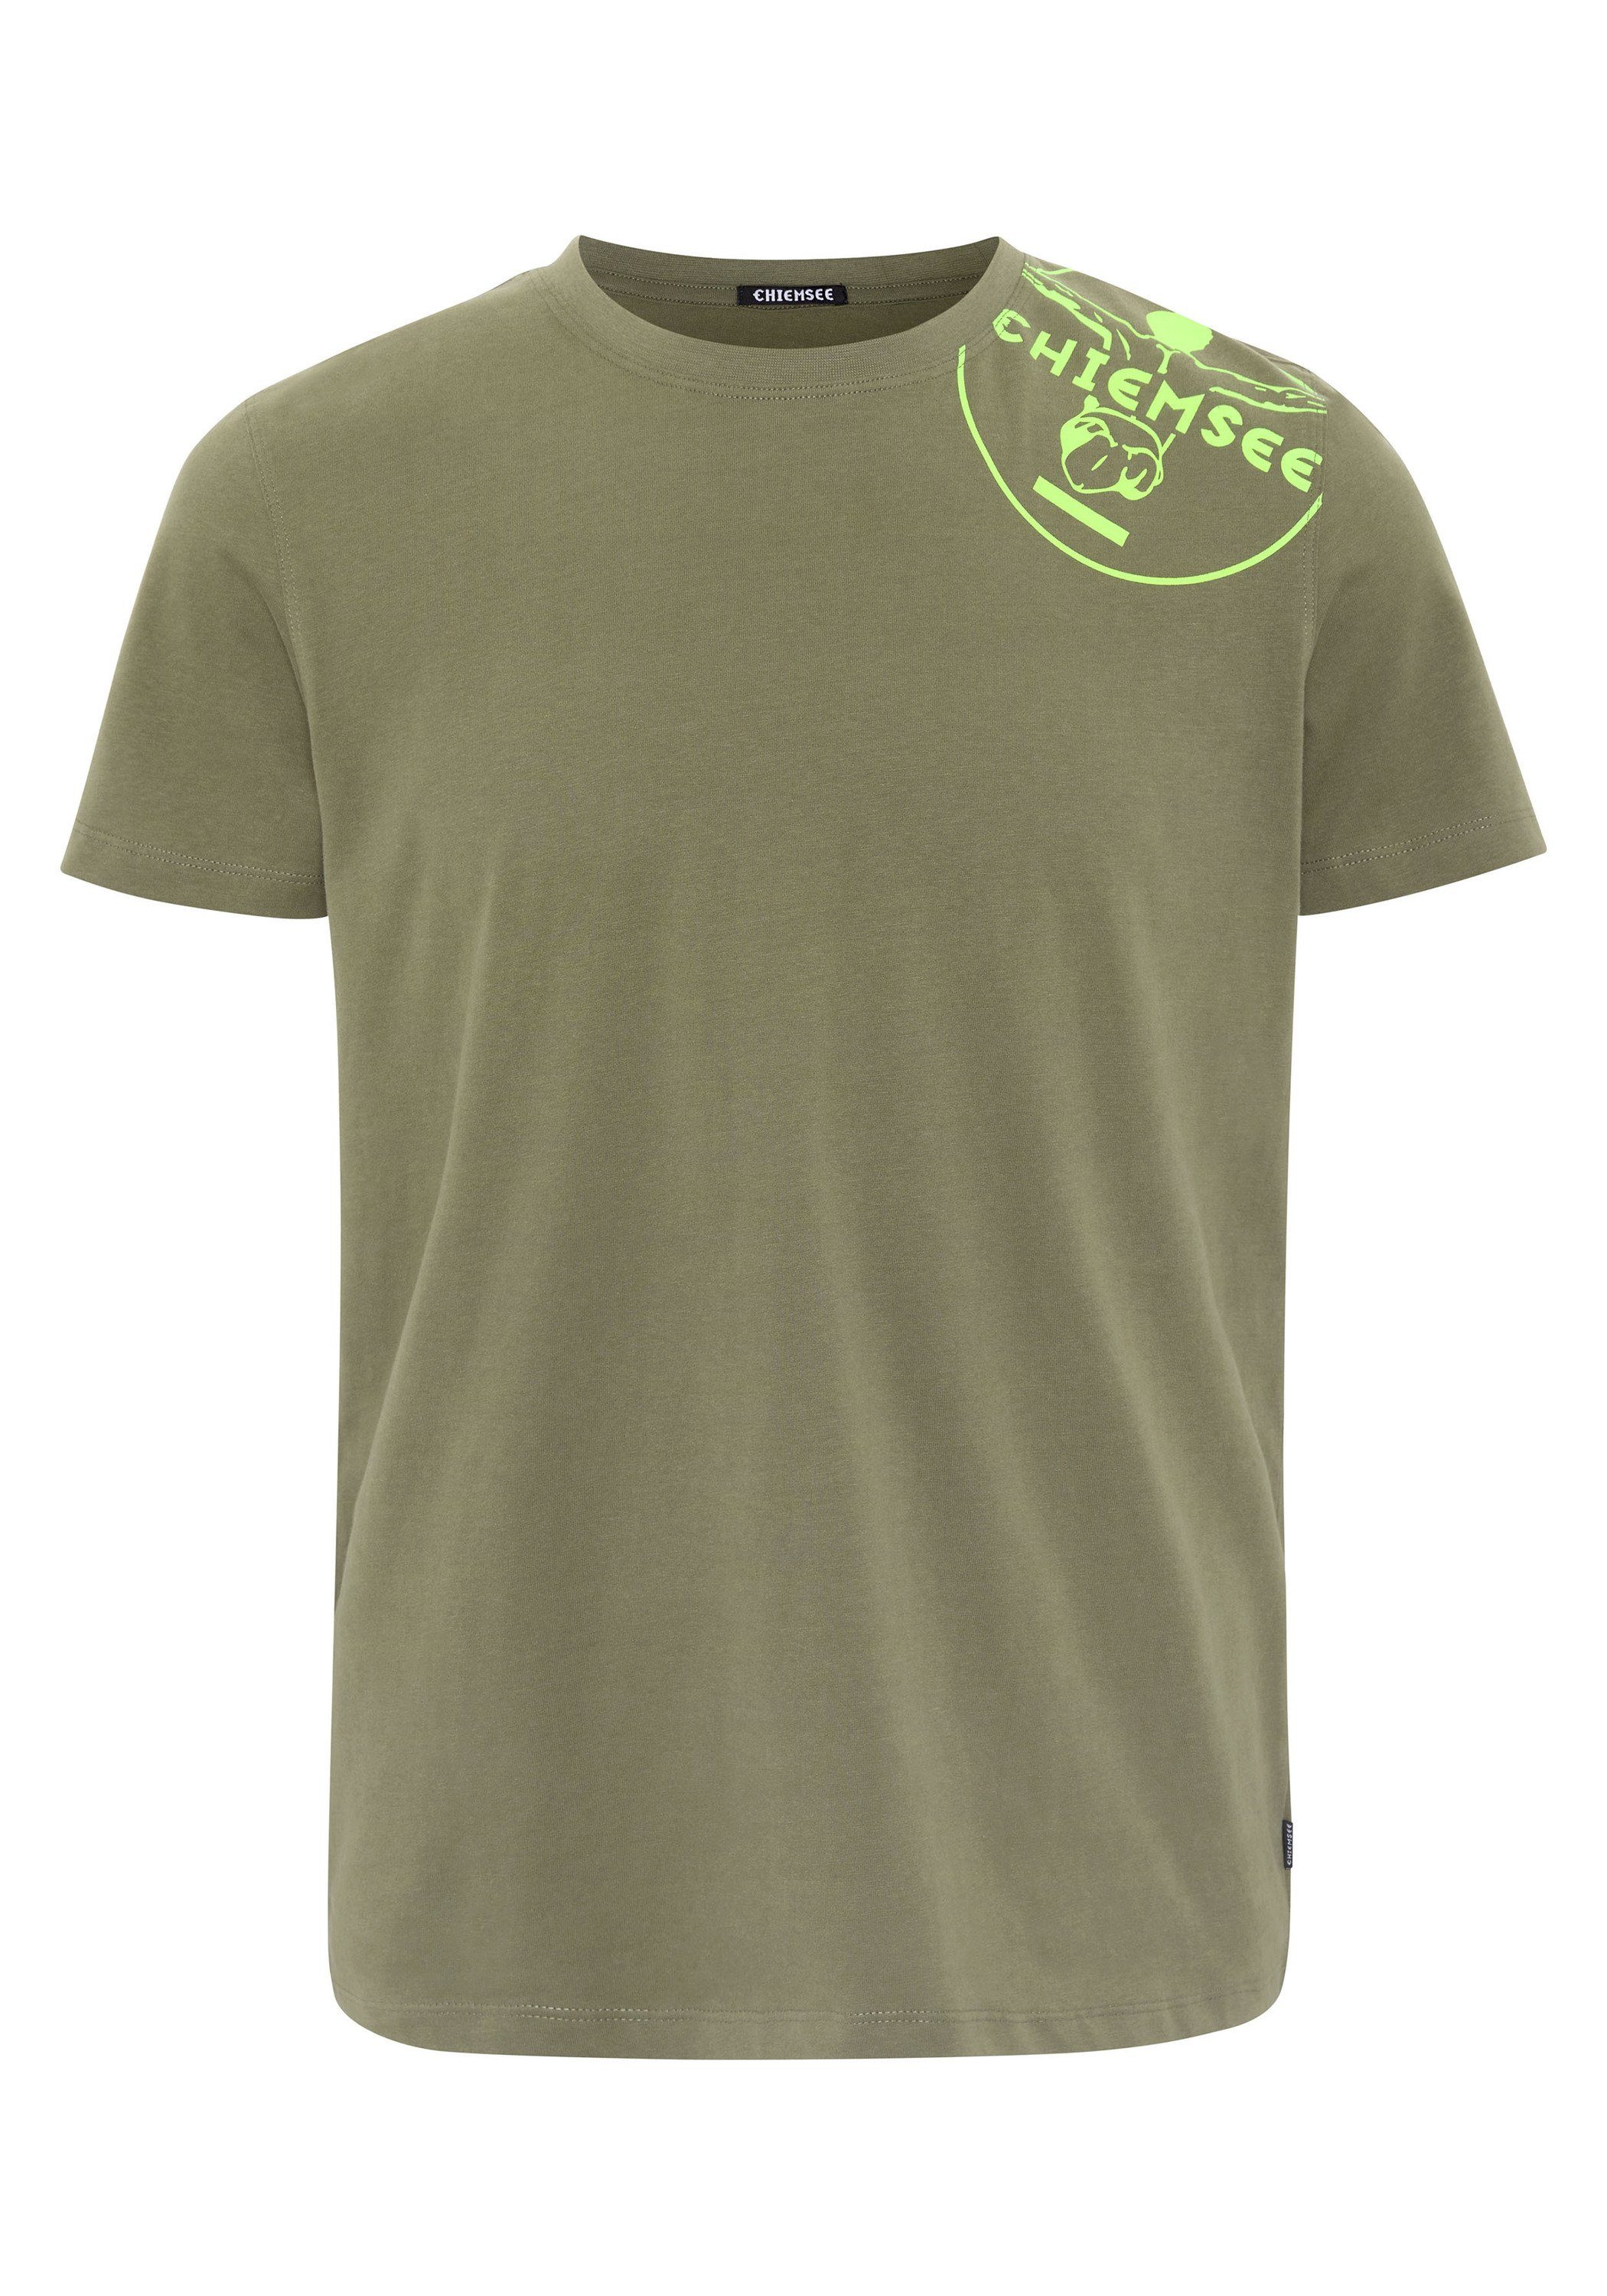 Chiemsee Print-Shirt T-Shirt mit Jumper-Motiv 1 Dusty Olive